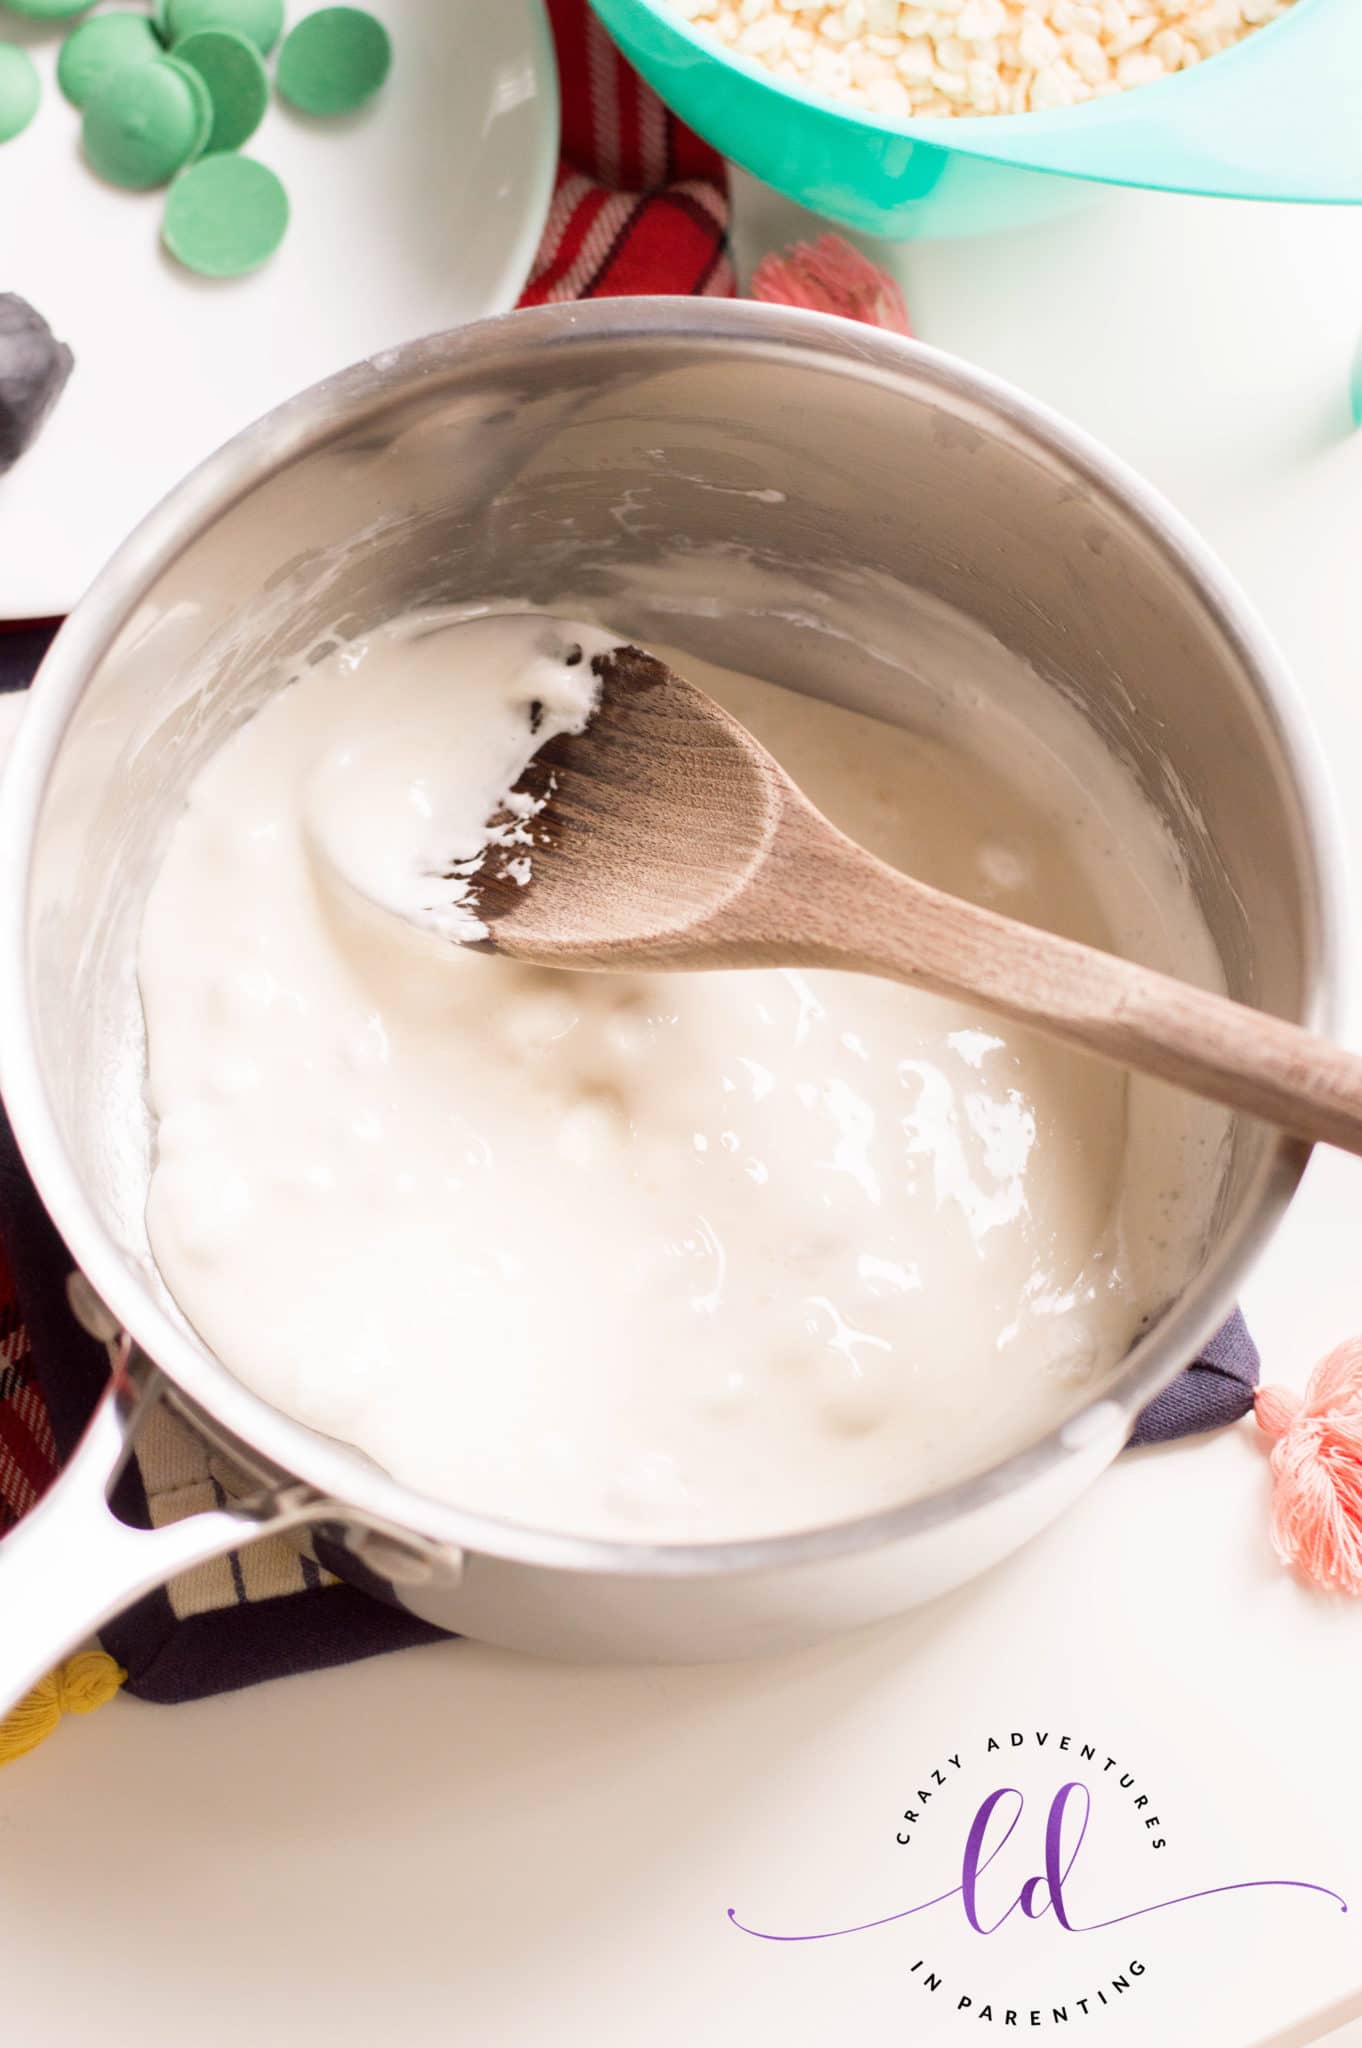 Melt Marshmallows to Make Halloween Eyeballs Rice Krispies Treats